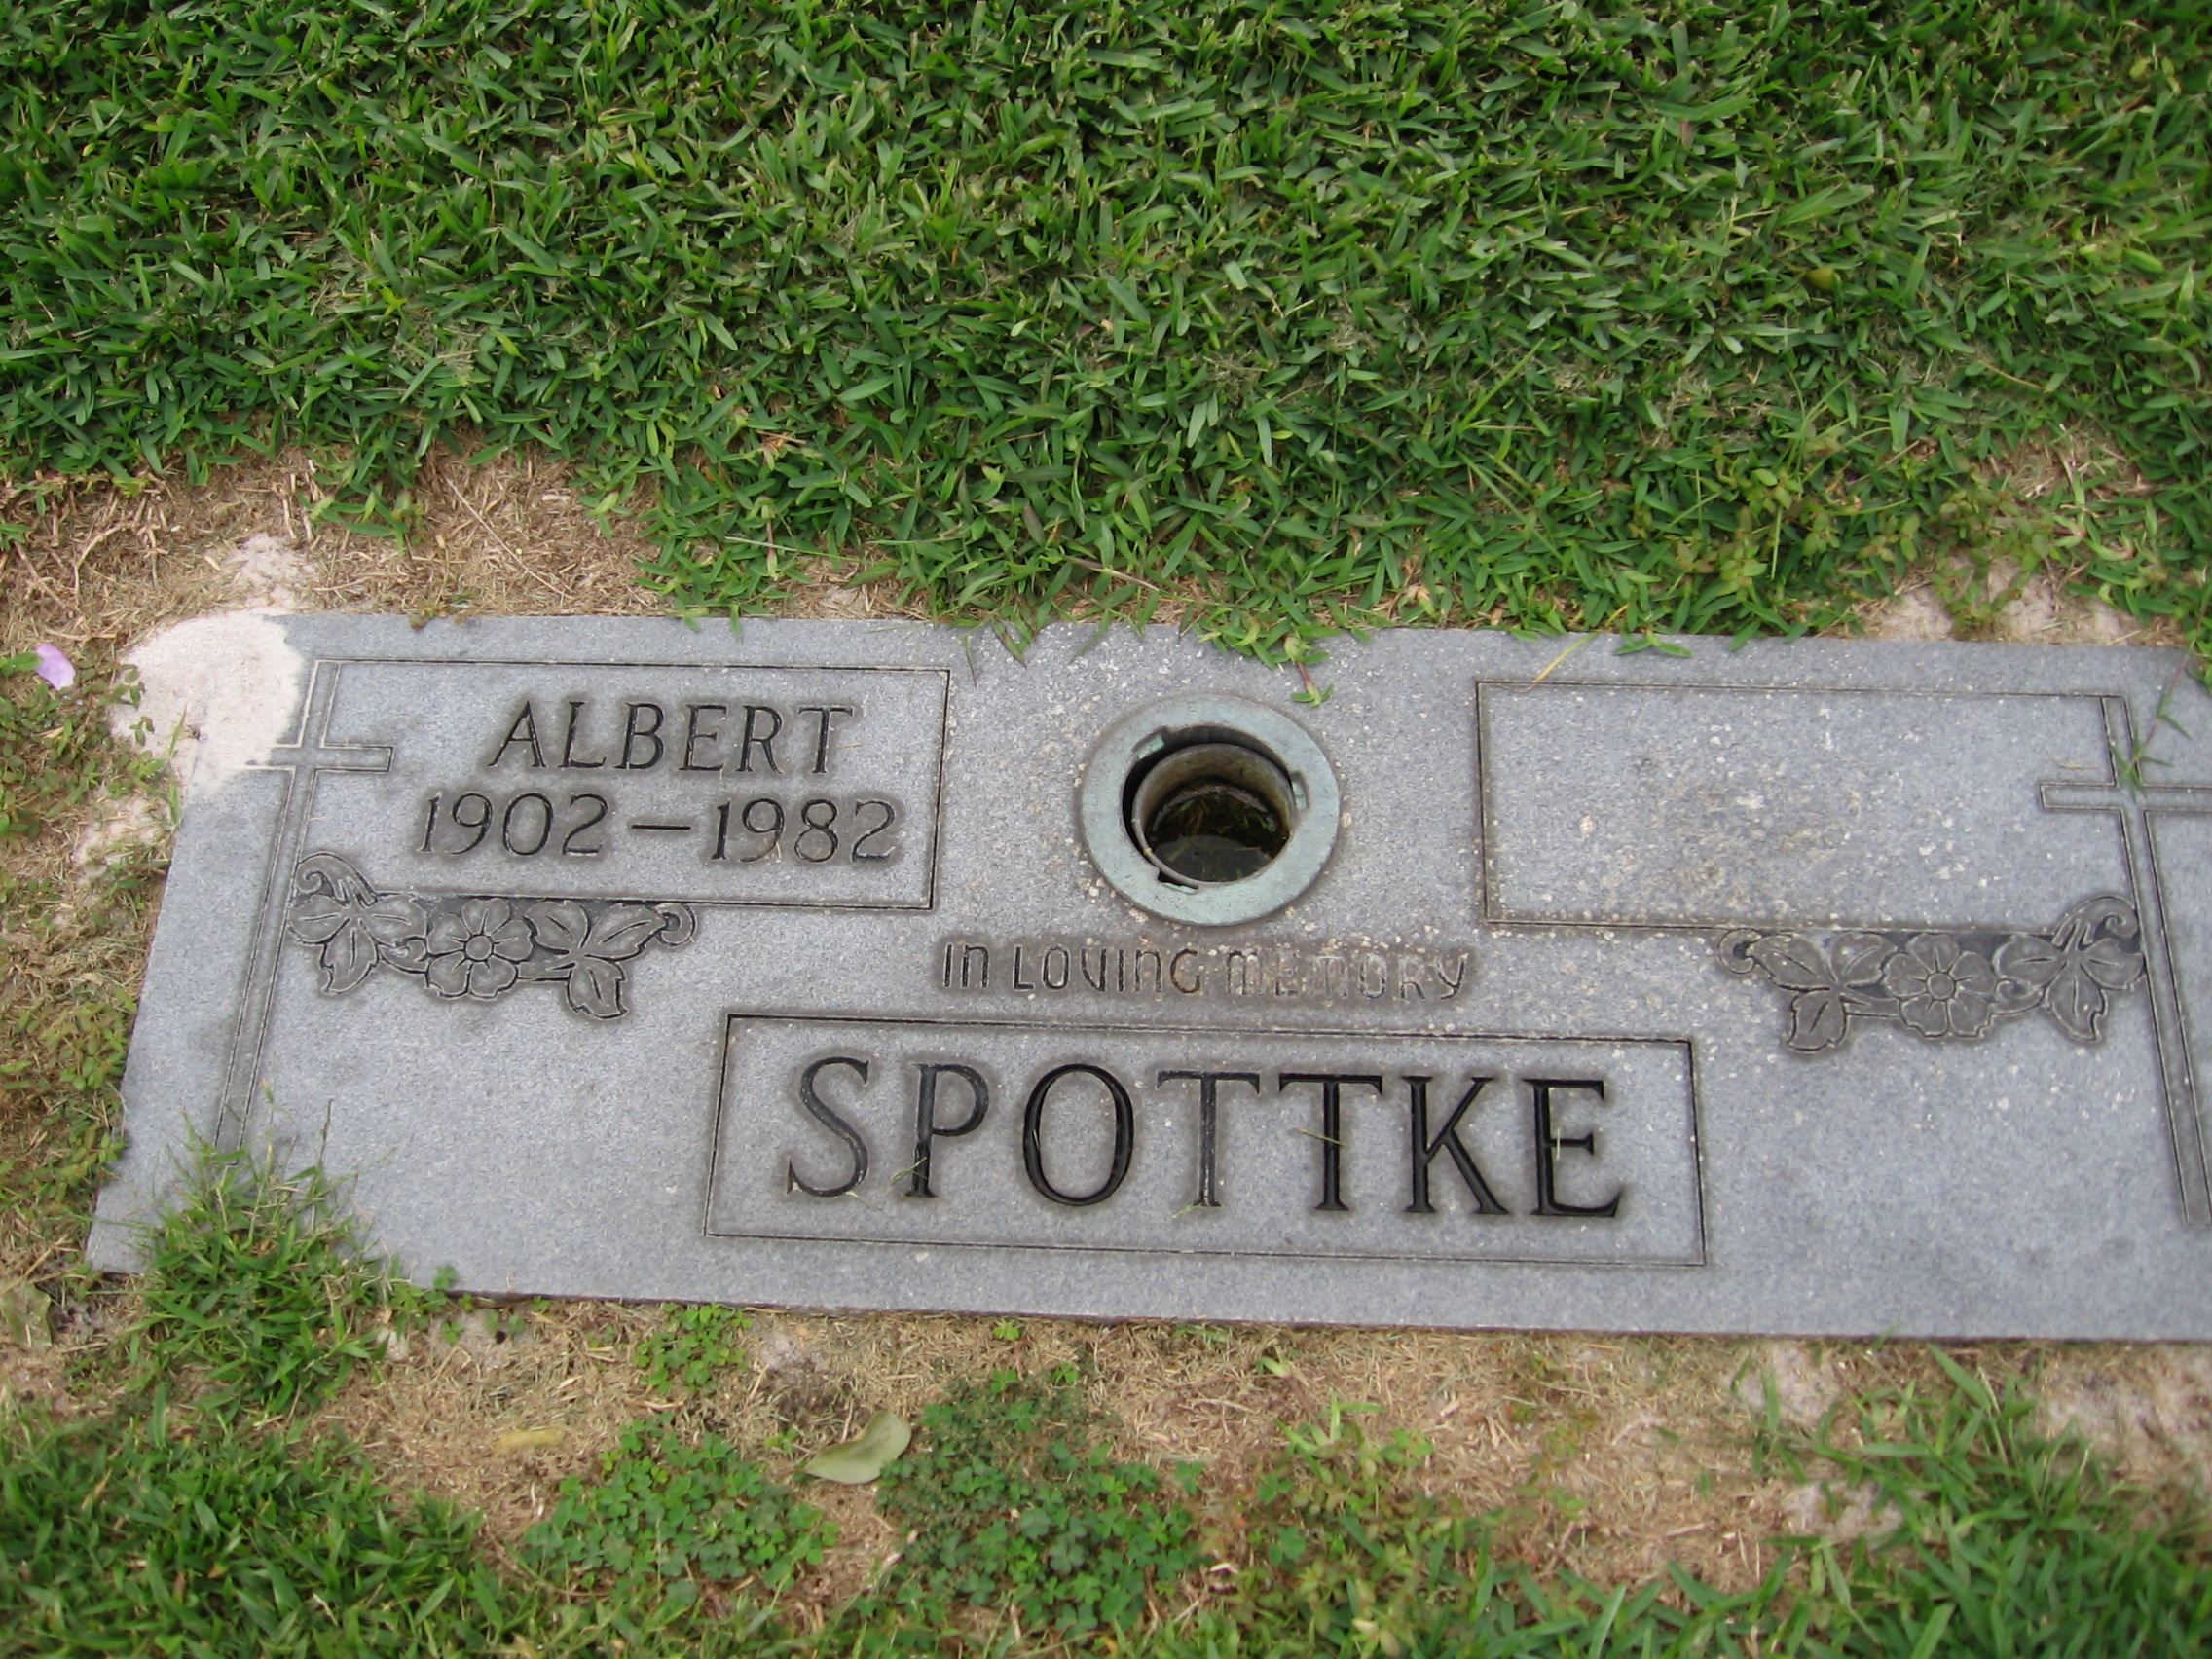 Albert Spottke